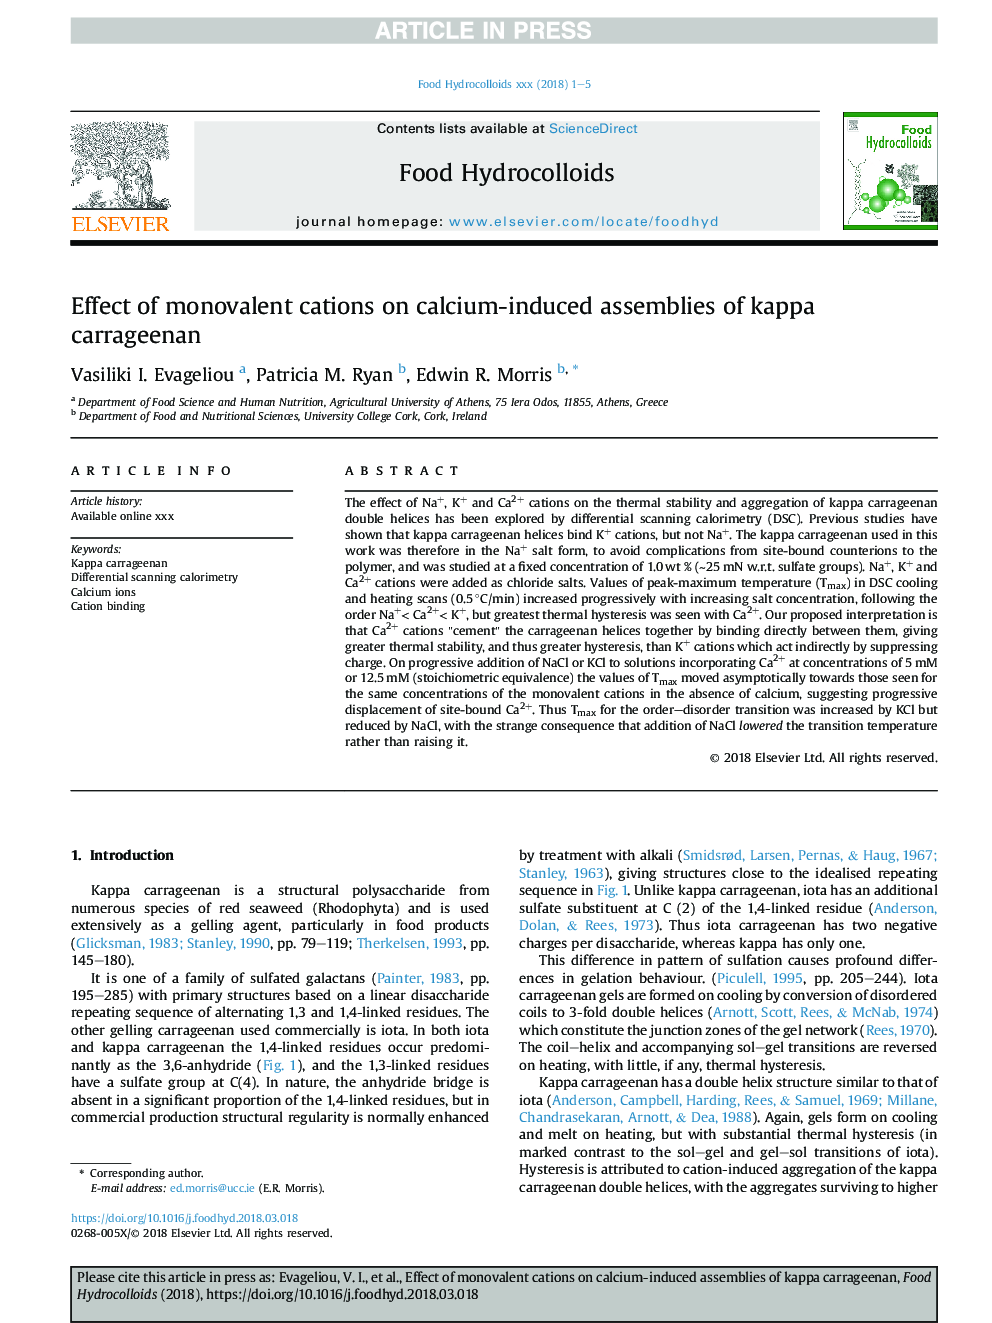 اثر کاتیون های یکنواخت در ترکیبات ناشی از کلسیم کاپا کاراژین